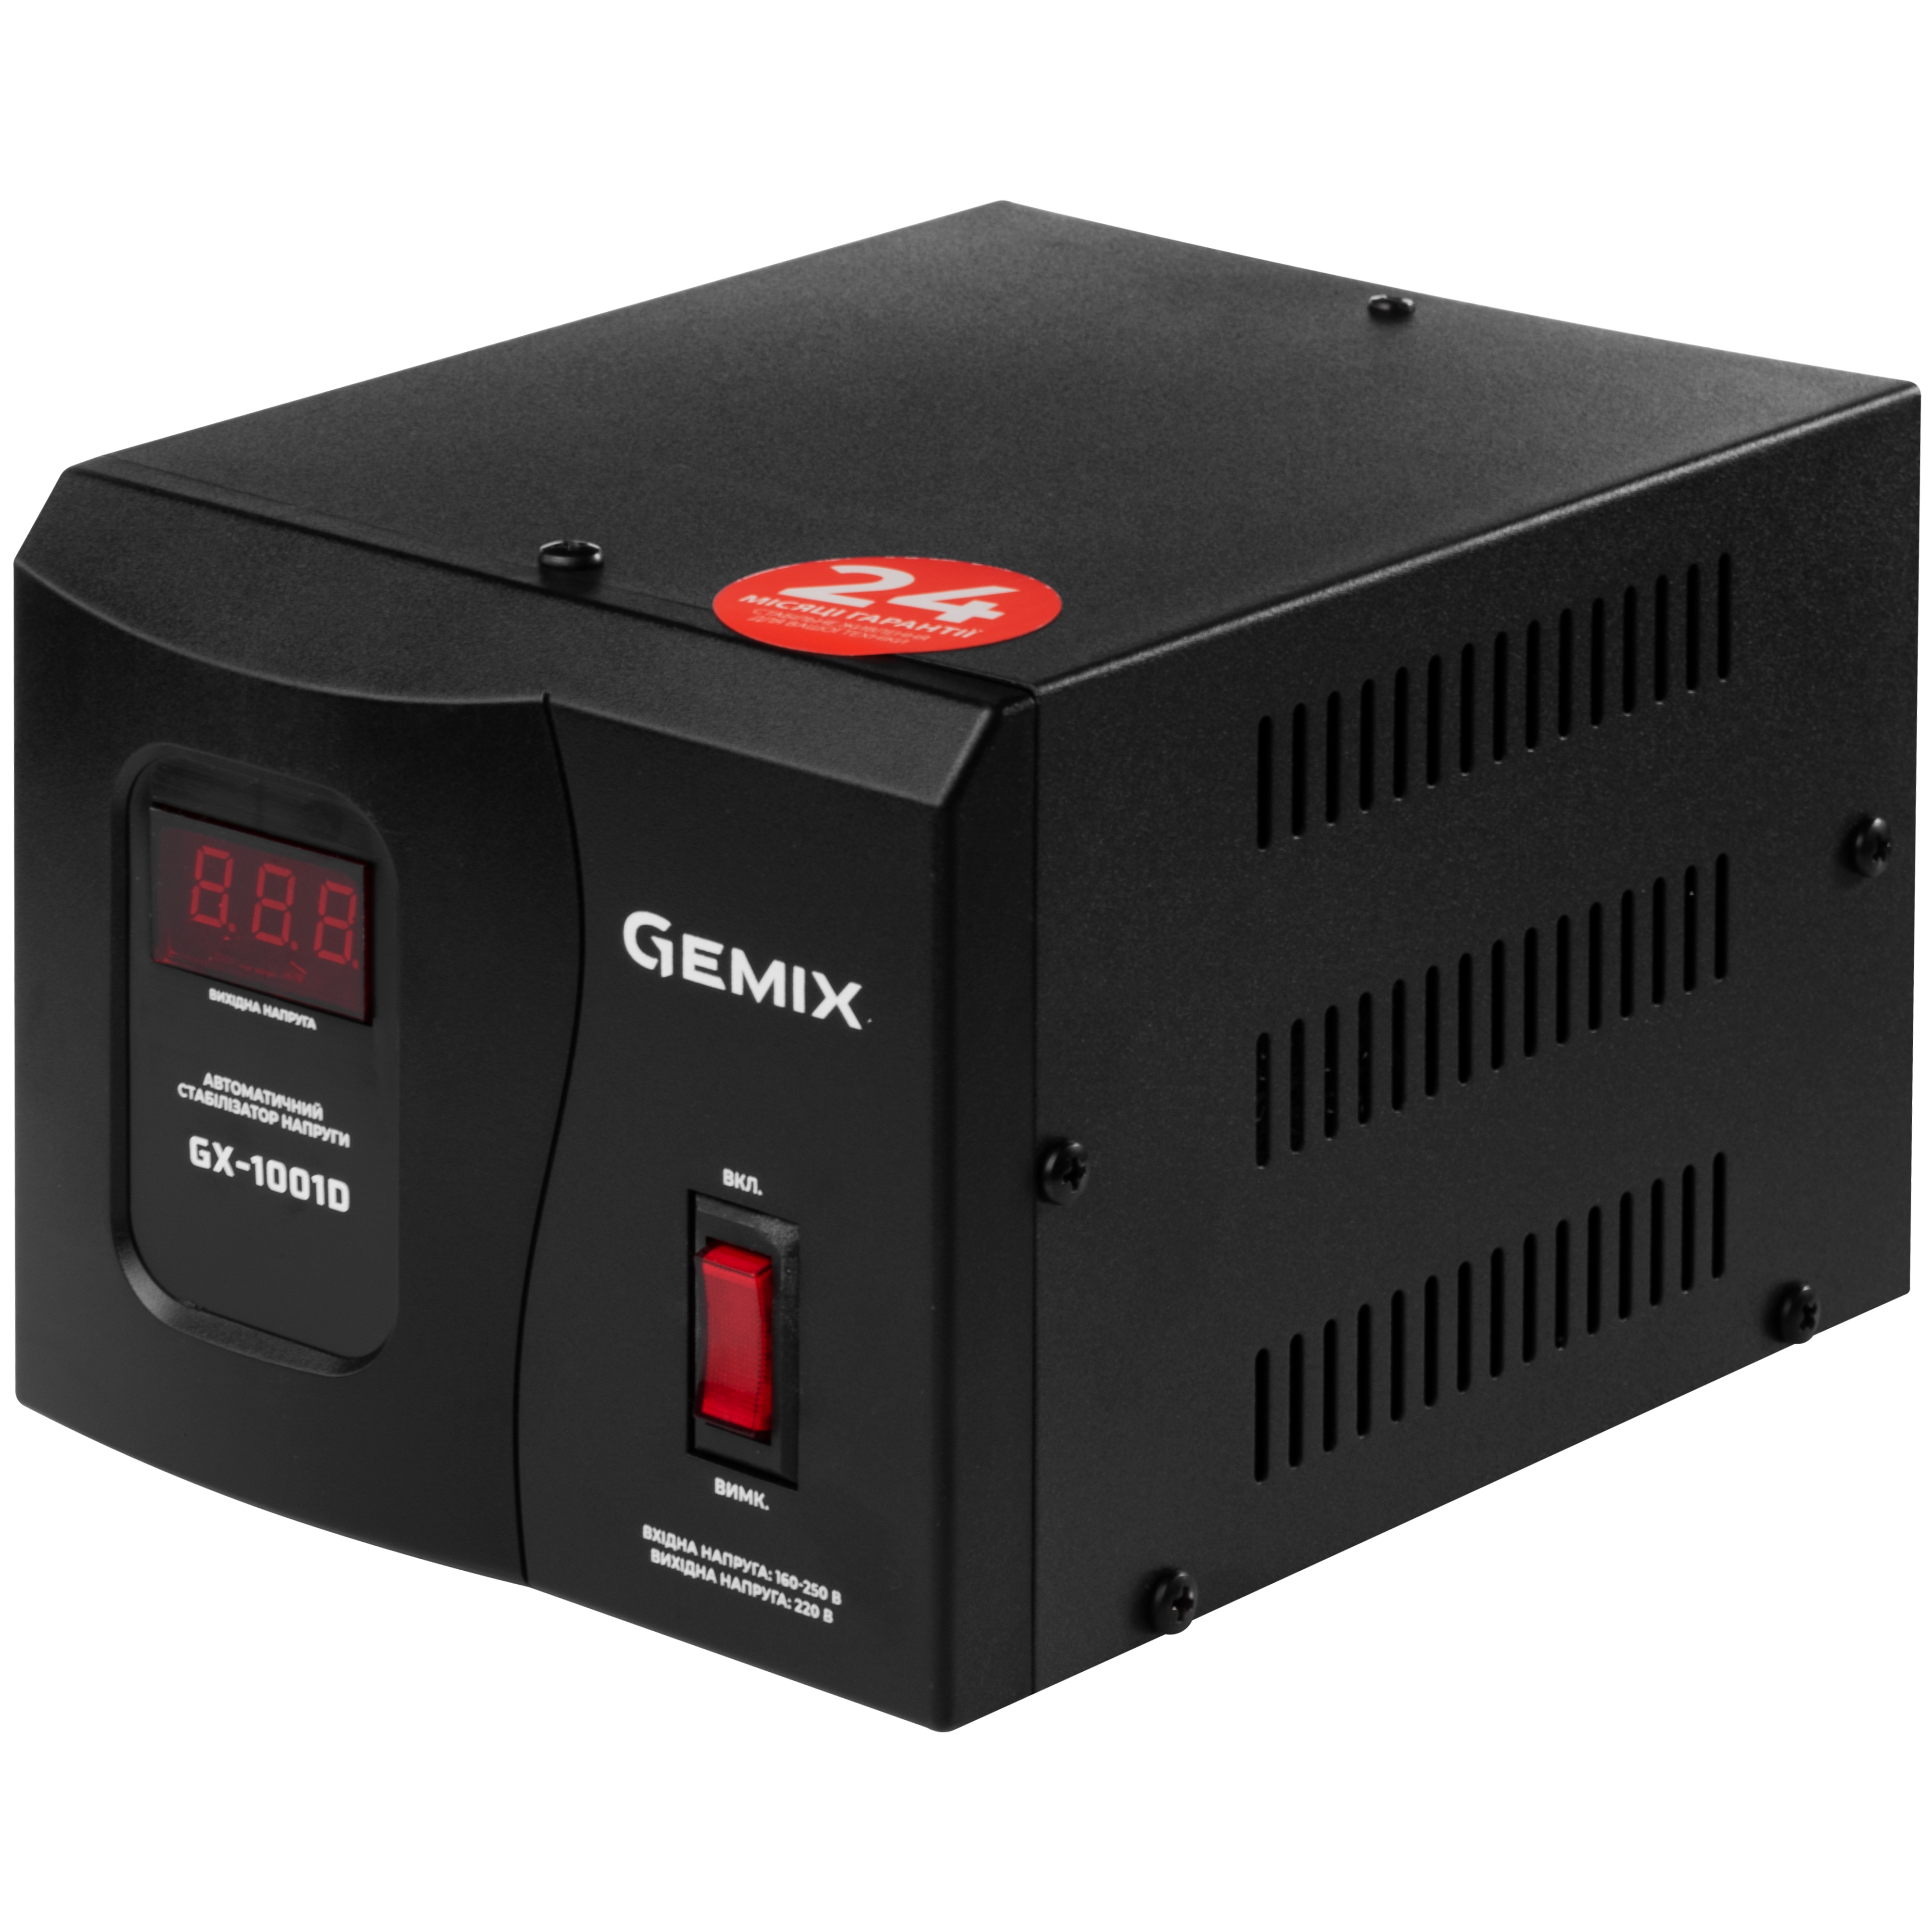 Характеристики побутовий стабілізатор Gemix GX-1001D